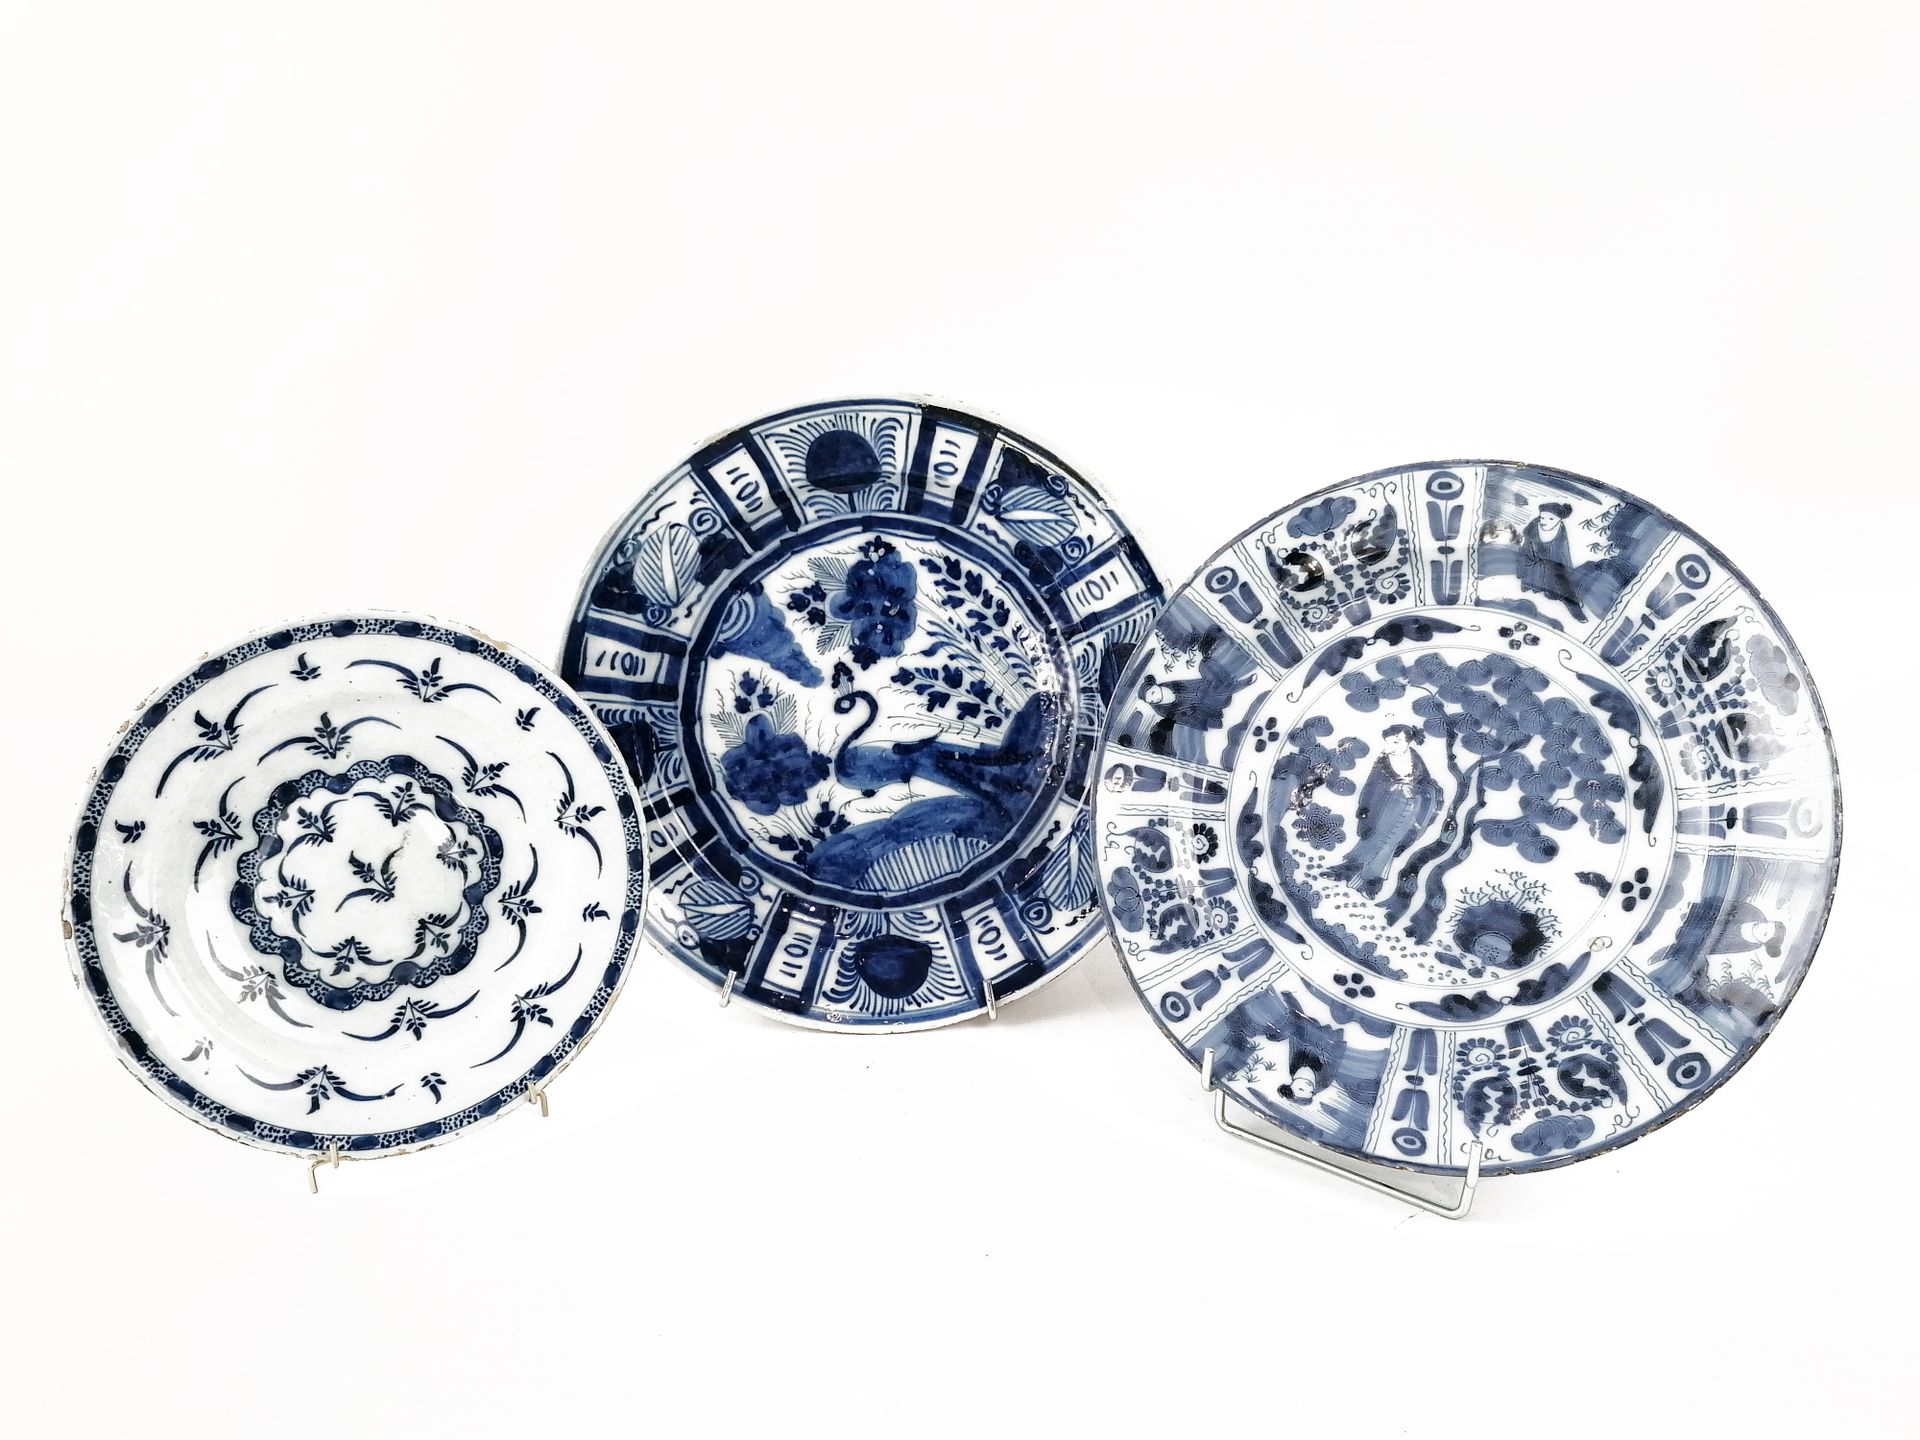 Null 欧洲，在中国的味道、
一套3个蓝白相间的大陶盘，包括：
-一个带叶子图案的盘子
-一个带有中国装饰的大盘子，翅膀上的花卉图案与中国图案交替出现。
-一&hellip;